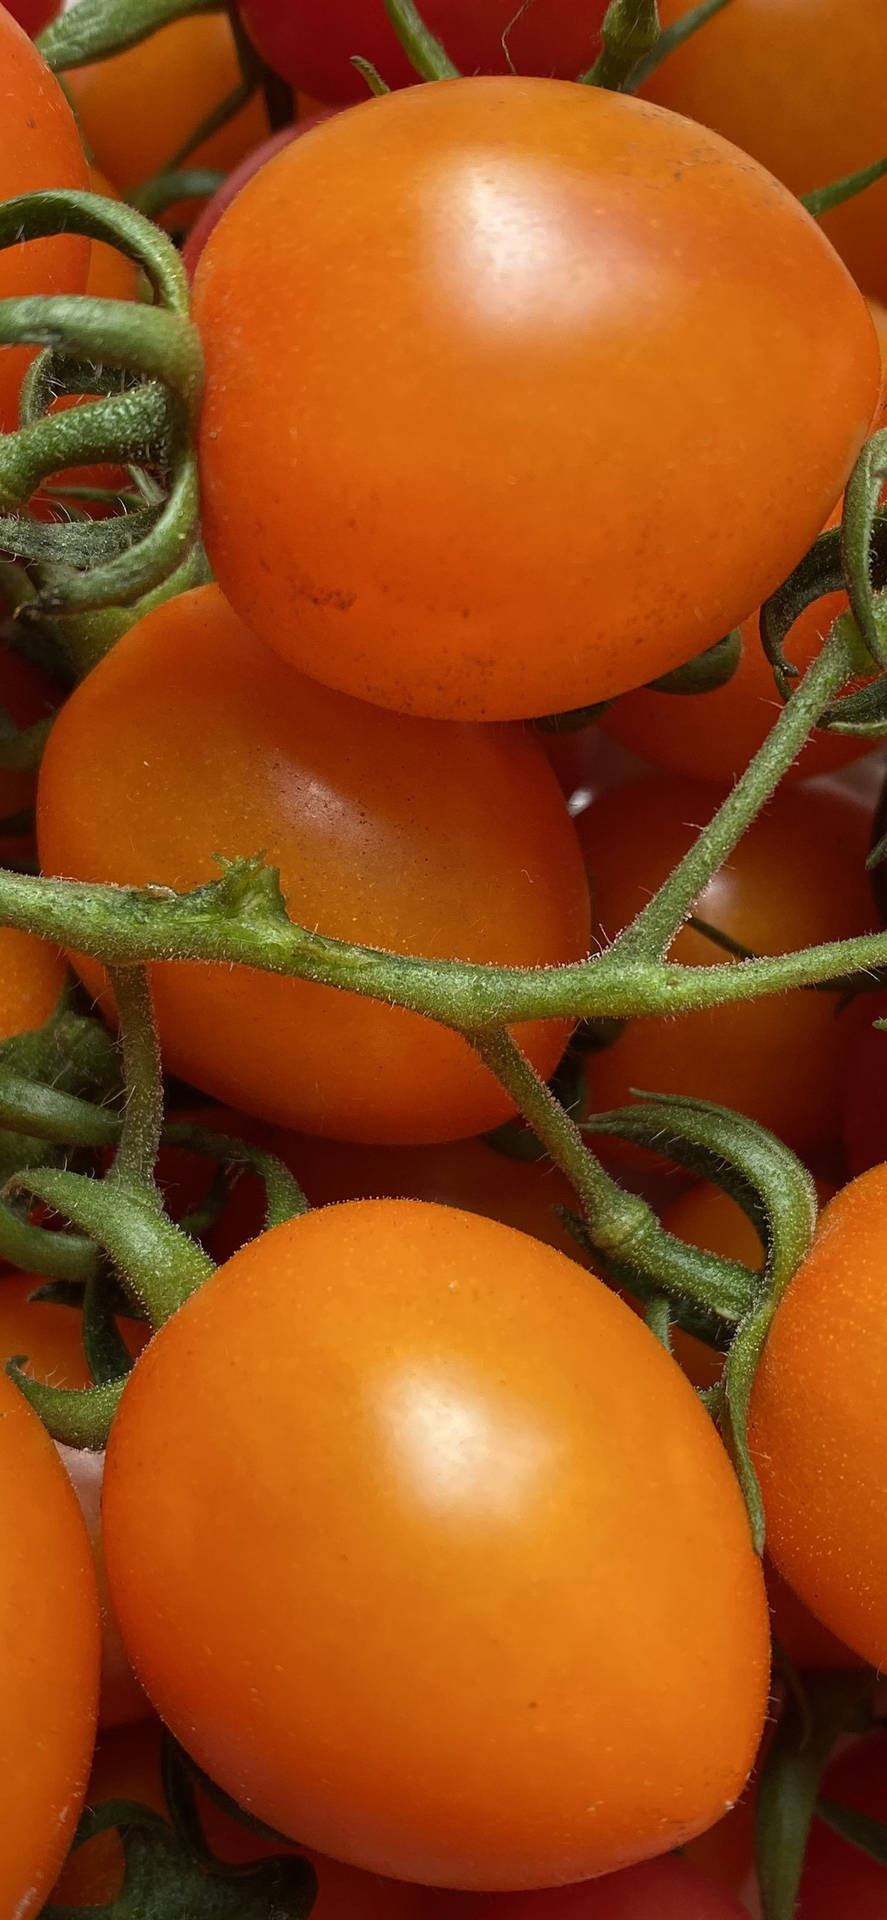 Vibrant Fresh Orange Tomatoes Up Close Background